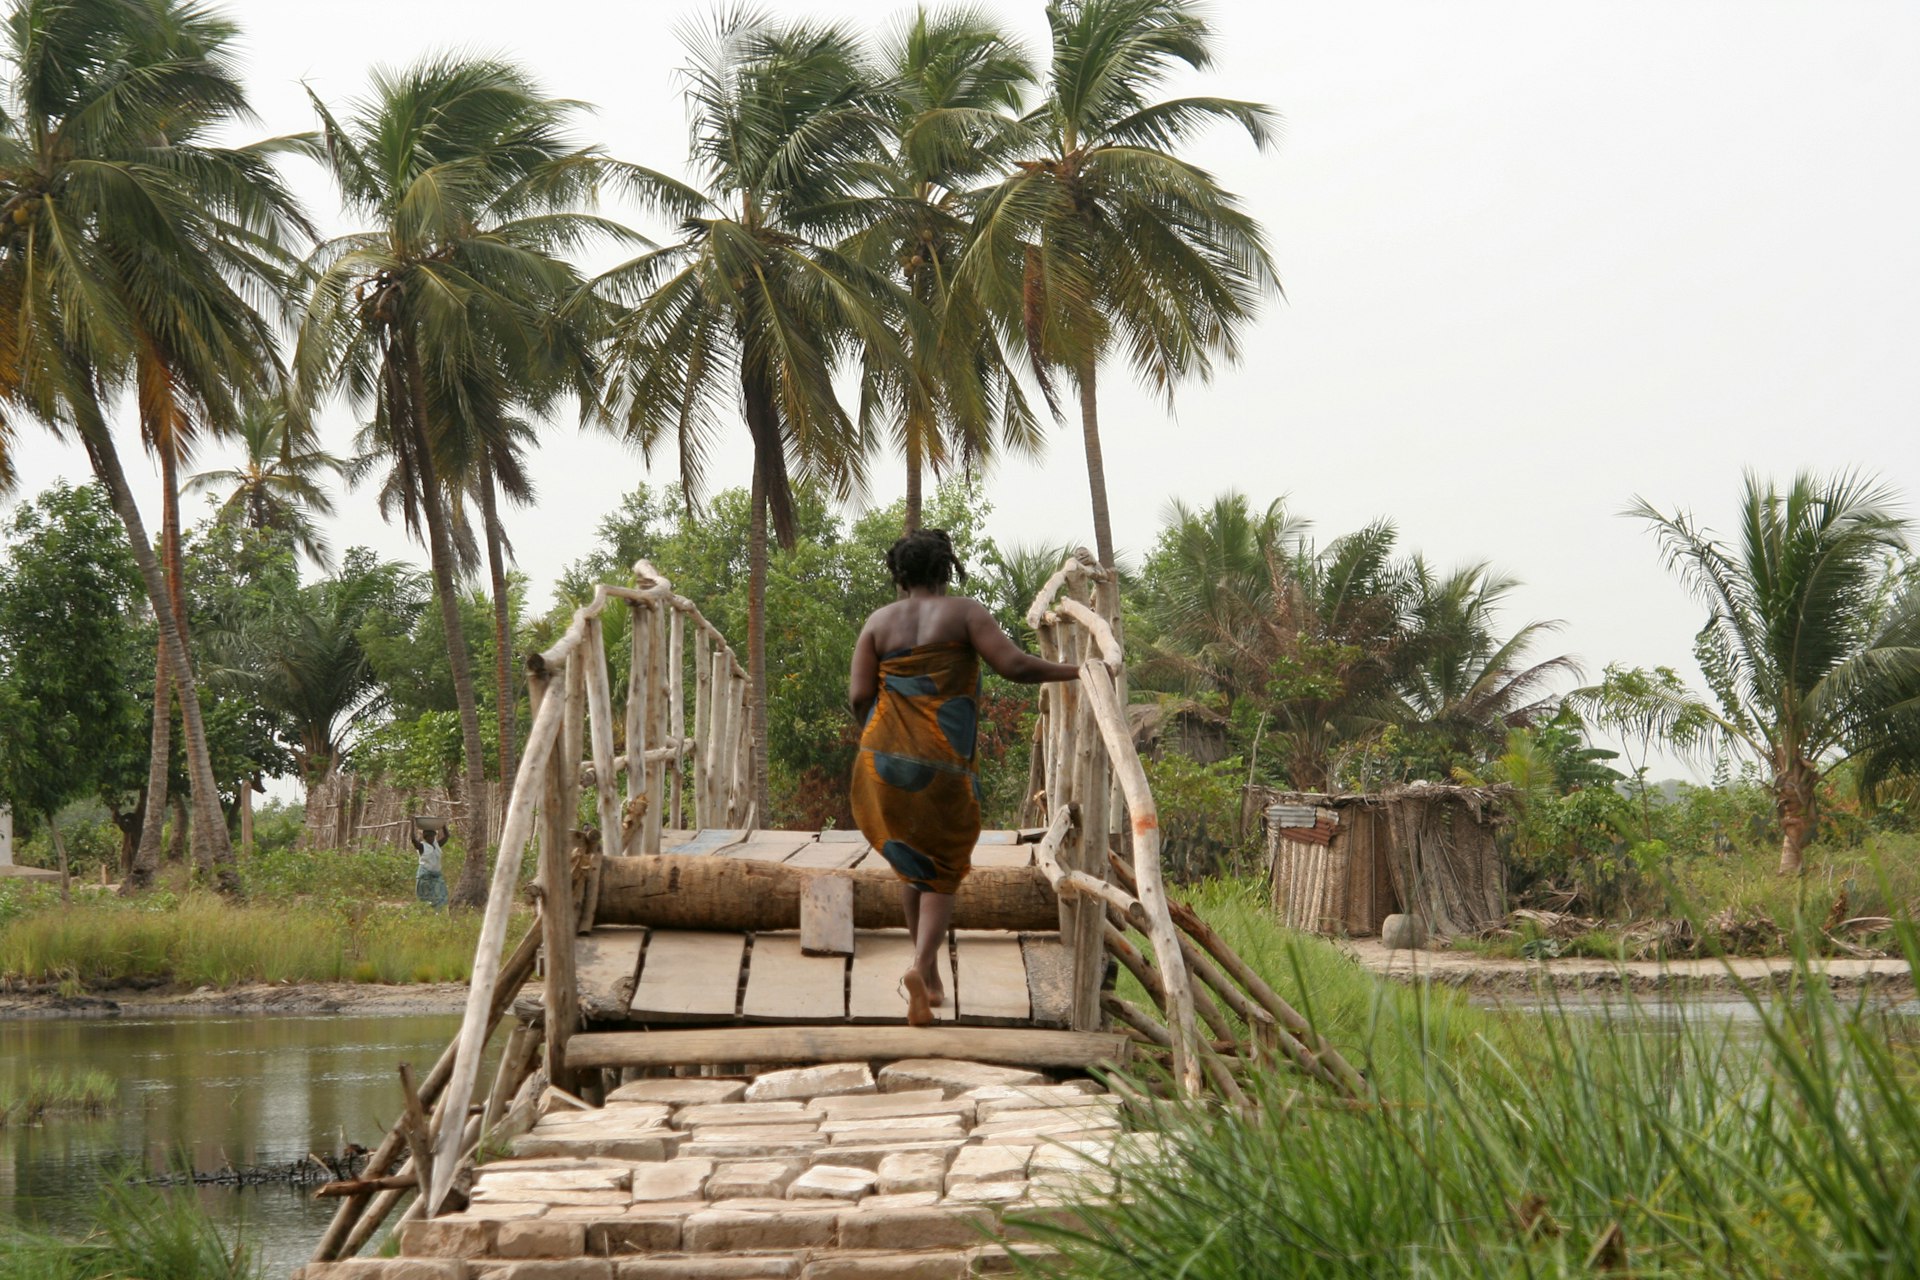 A woman walks across a wooden bridge in Oidah, Benin